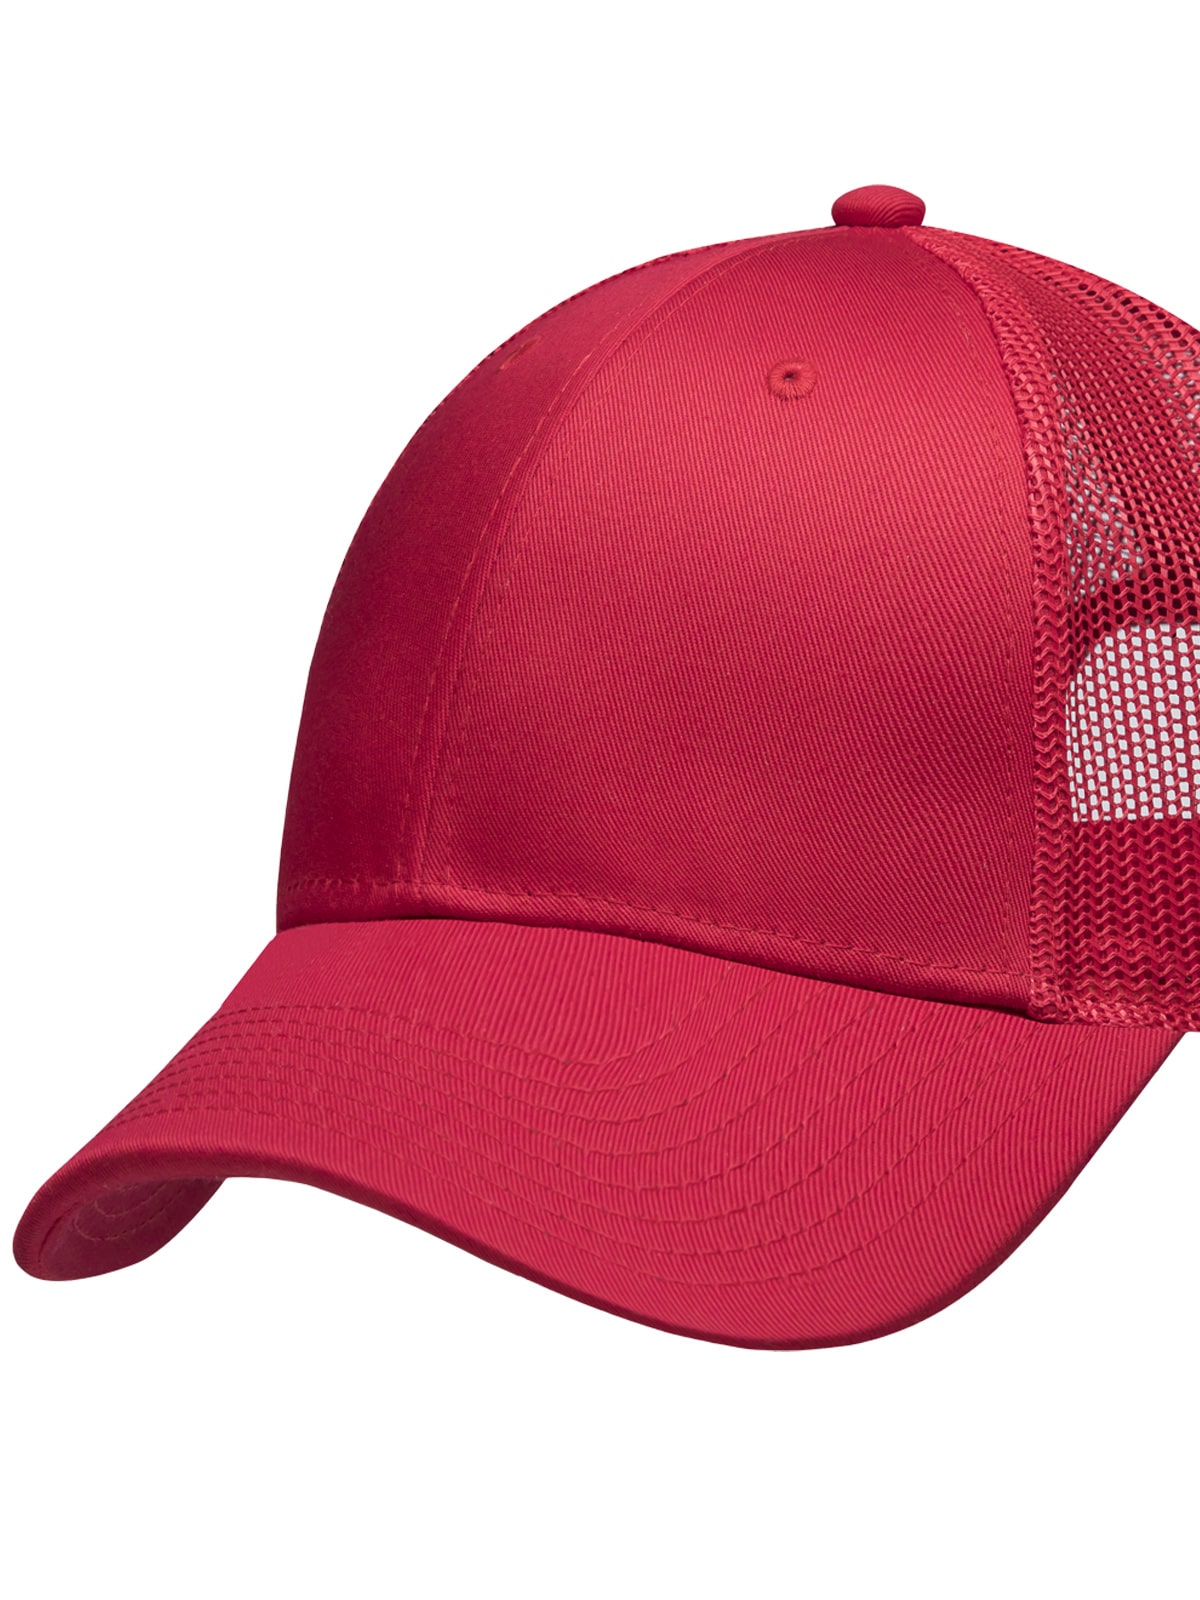 gorra malla roja